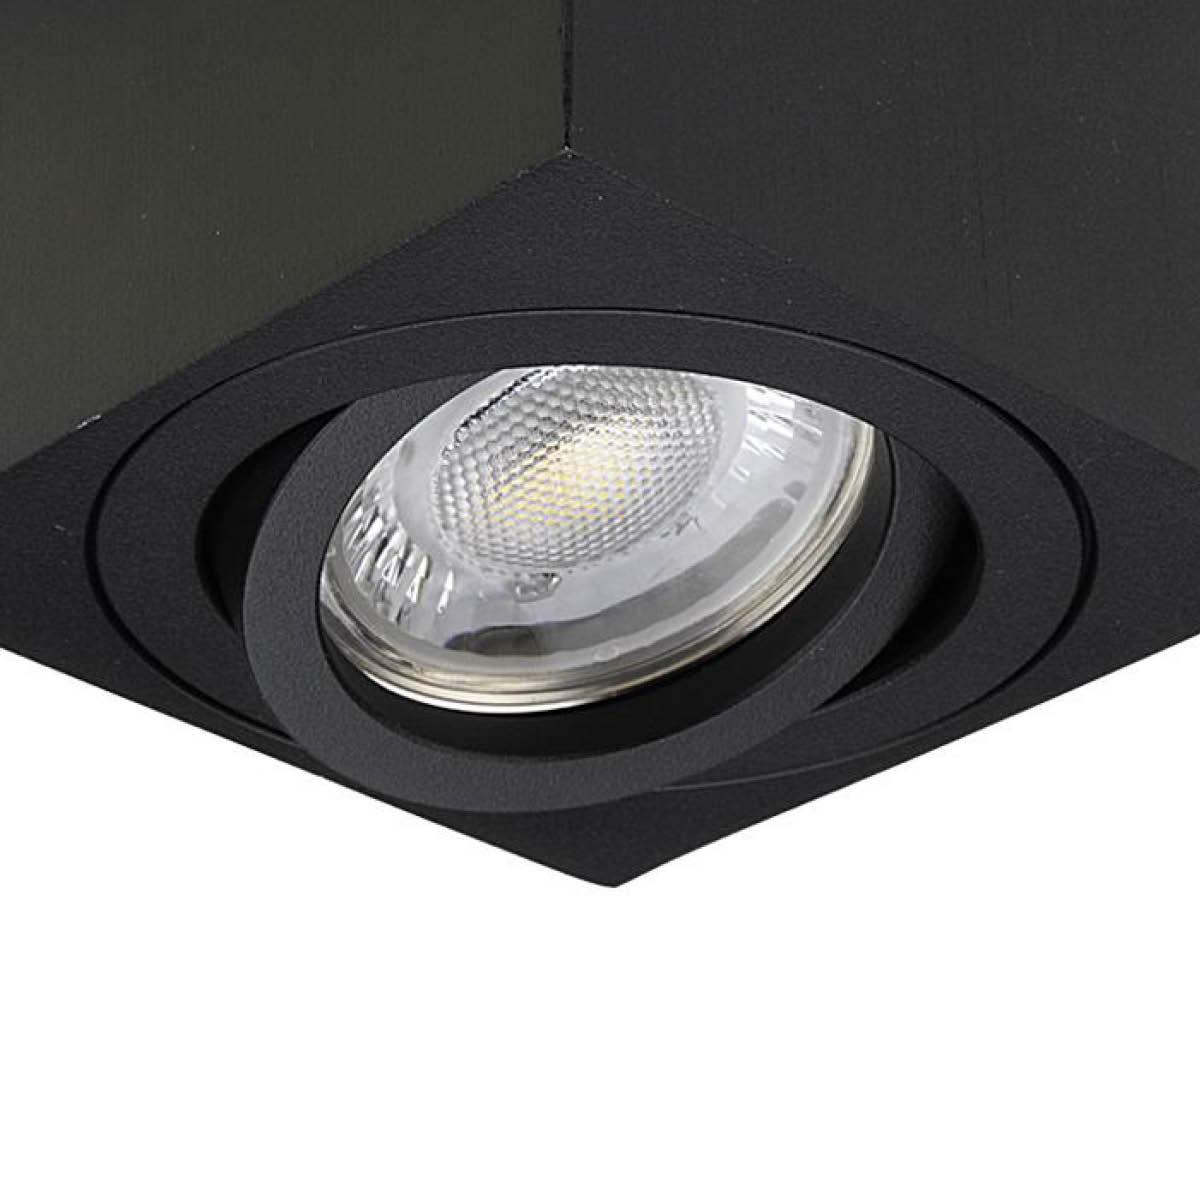 Flacher Aufbaustrahler schwarz eckig schwenkbar Deckenleuchte - LED Leuchtmittel:  3W RGB+Warmweiß 230V dimmbar 60°